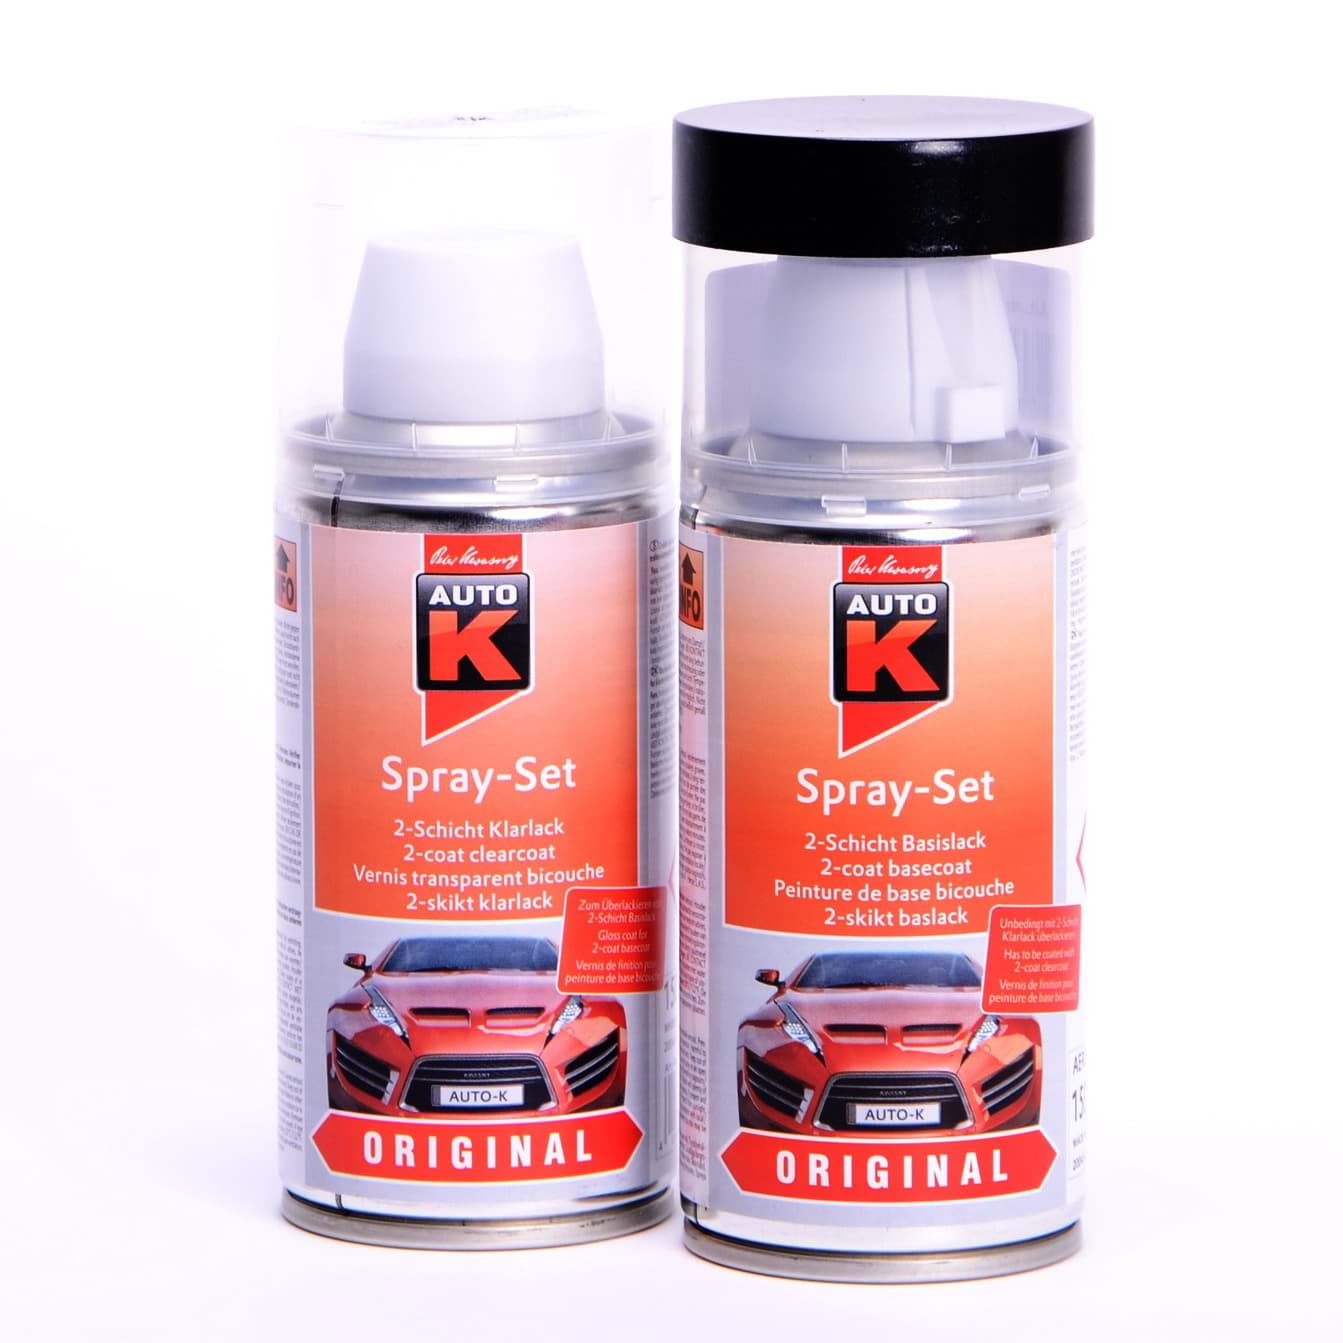 Afbeelding van Auto-K Spray-Set Autolack für Renault 603 Gris Hologramme met 43443